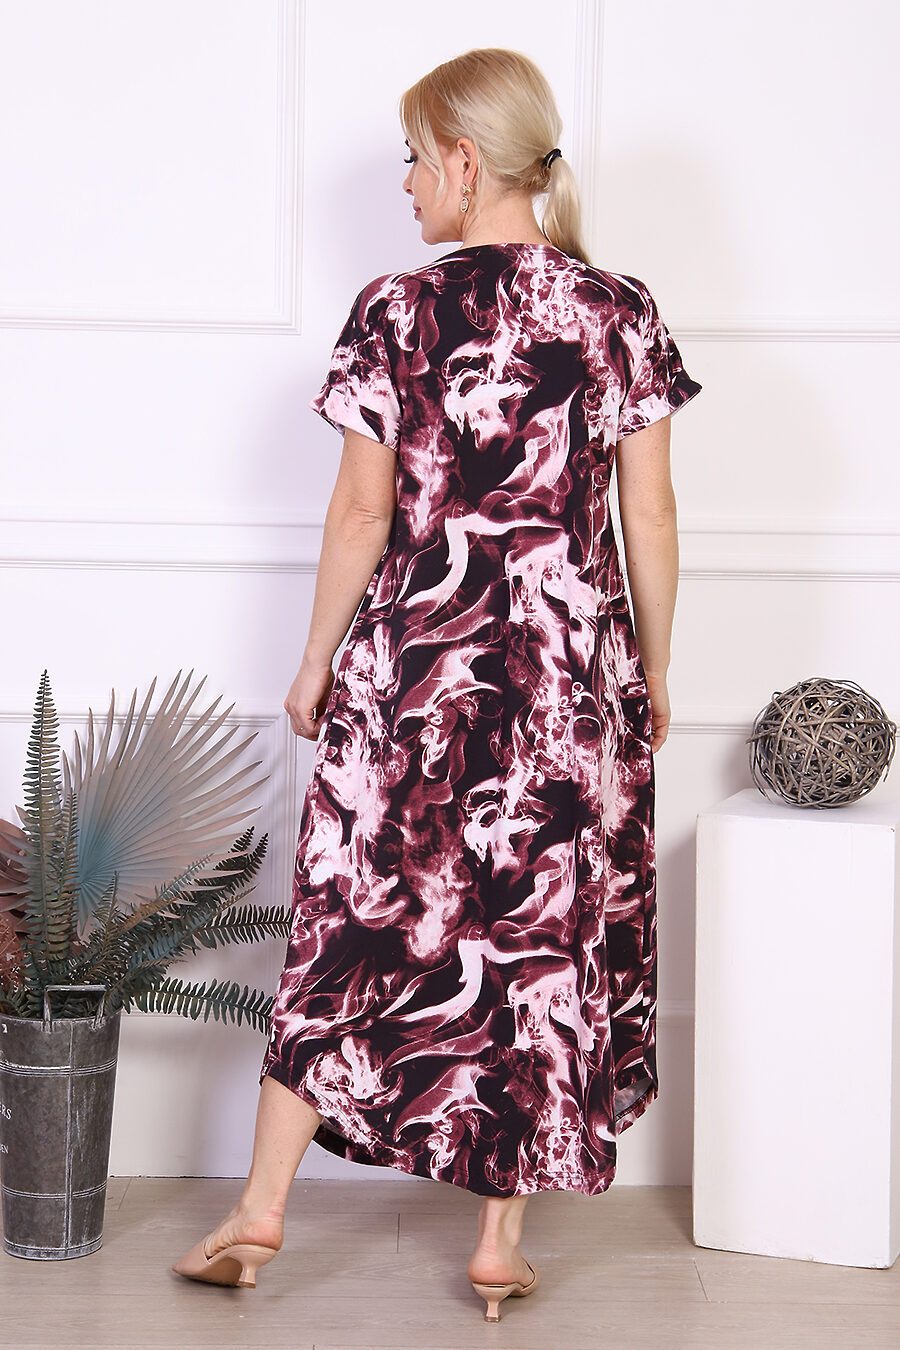 Платье 24234 для женщин НАТАЛИ 785377 купить оптом от производителя. Совместная покупка женской одежды в OptMoyo